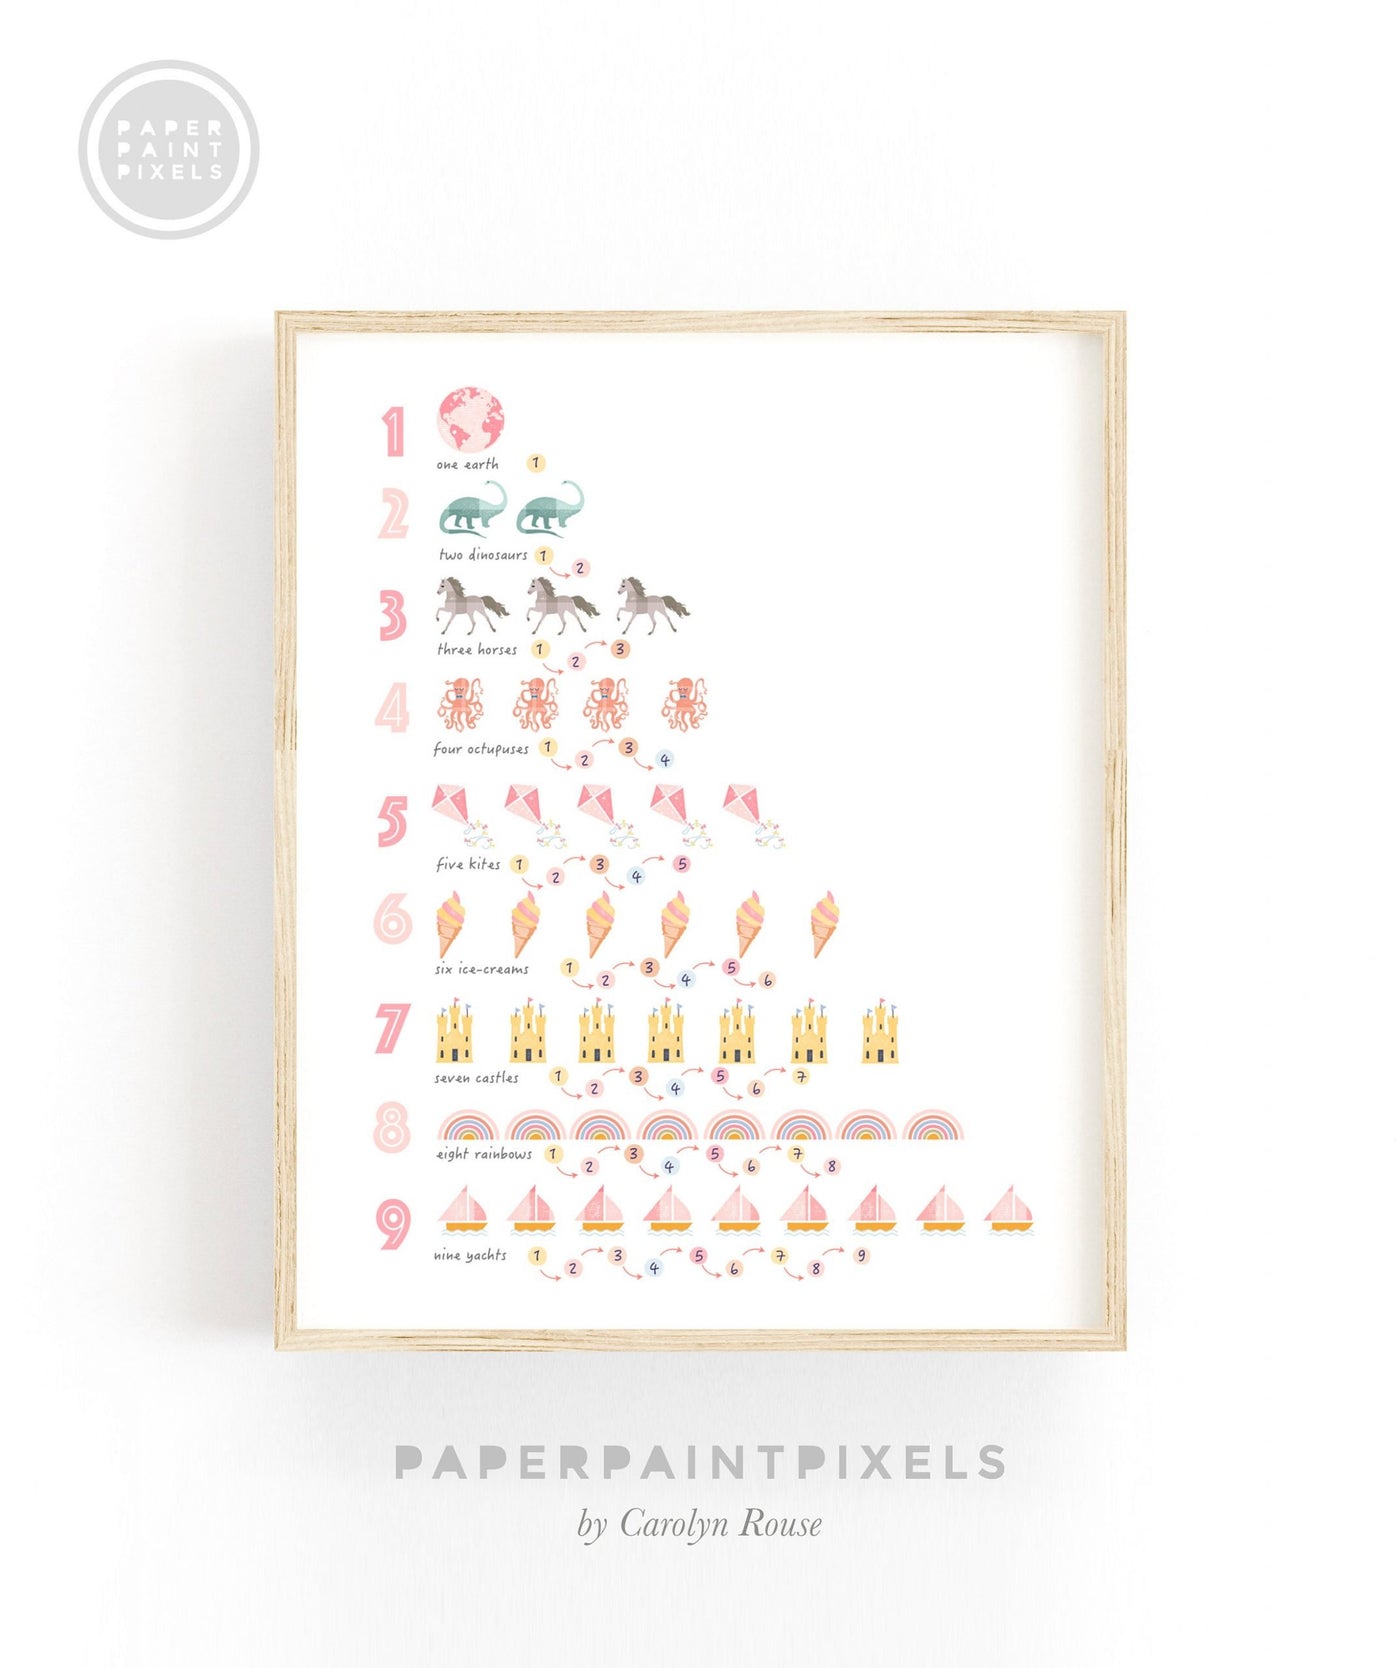 Numbers Print - PaperPaintPixels